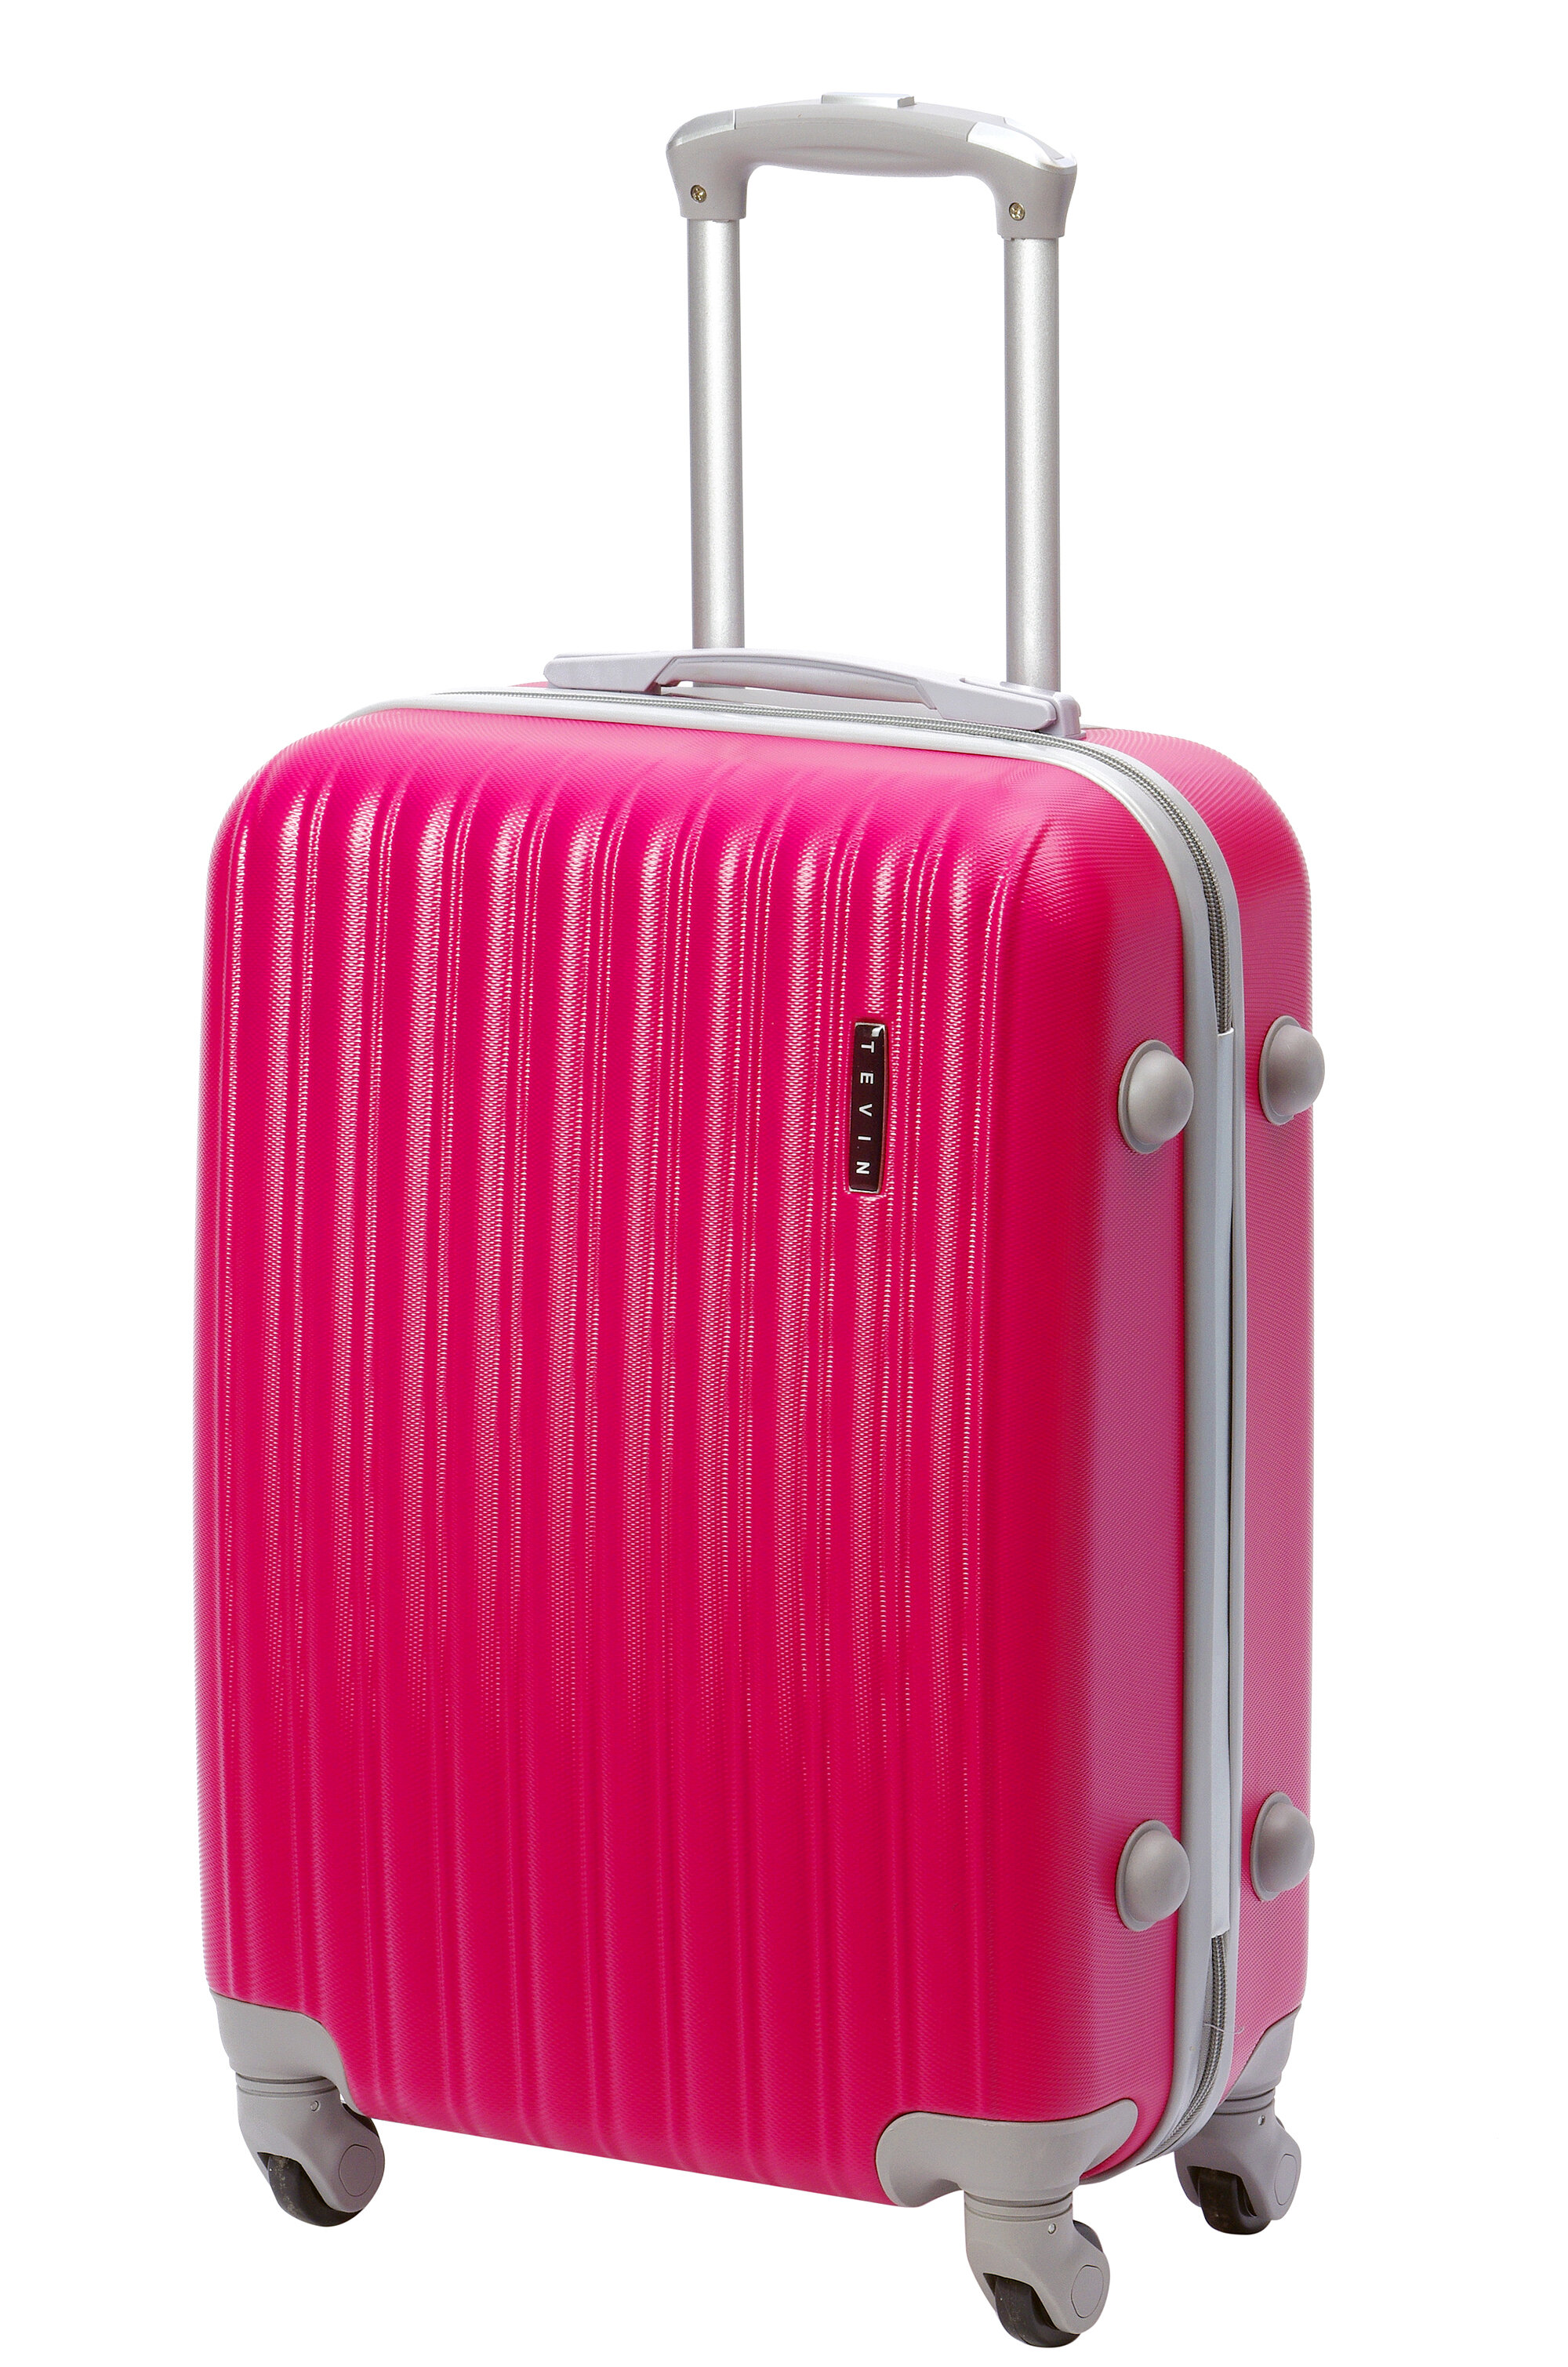 Чемодан на колесах дорожный огромный семейный багаж для путешествий l+ TEVIN размер Л+ 76 см 120 л прочный и легкий abs (абс) пластик Розовый яркий